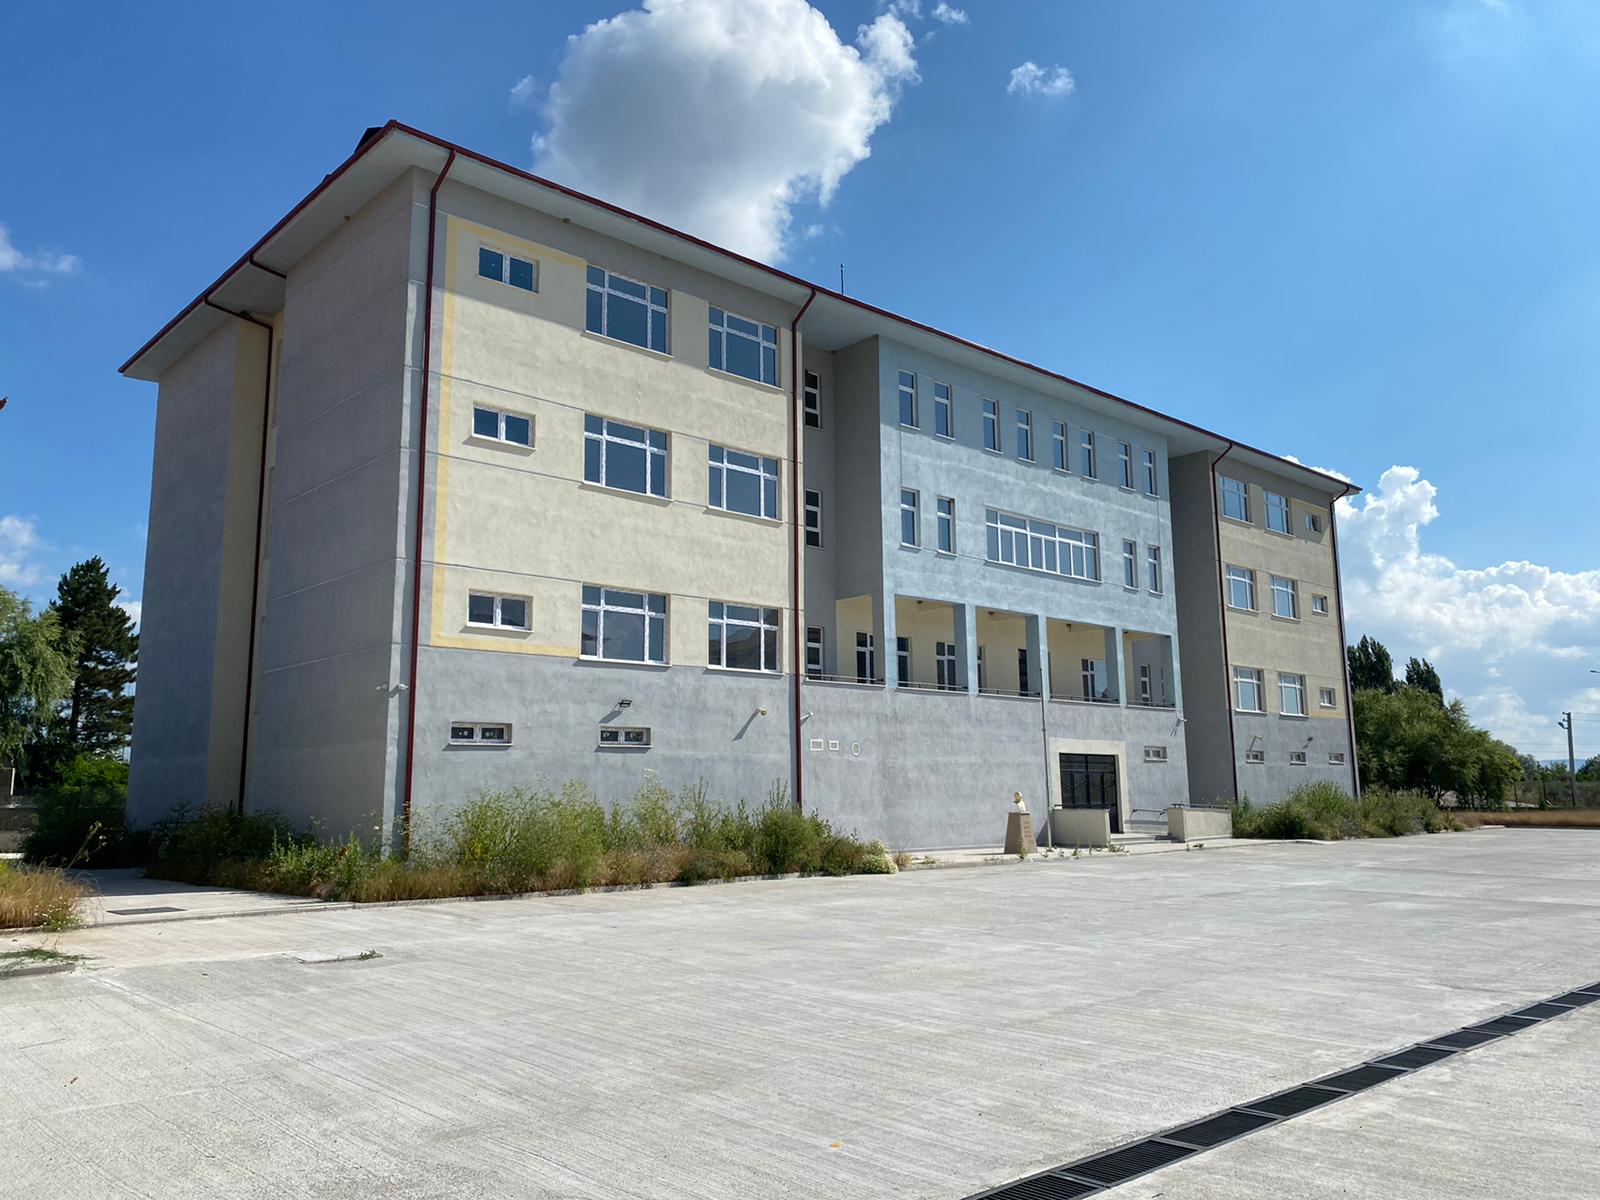  İnönü’deki Yeni Okul Binası ve Kapalı Spor Salonu İnşası Tamamlandı